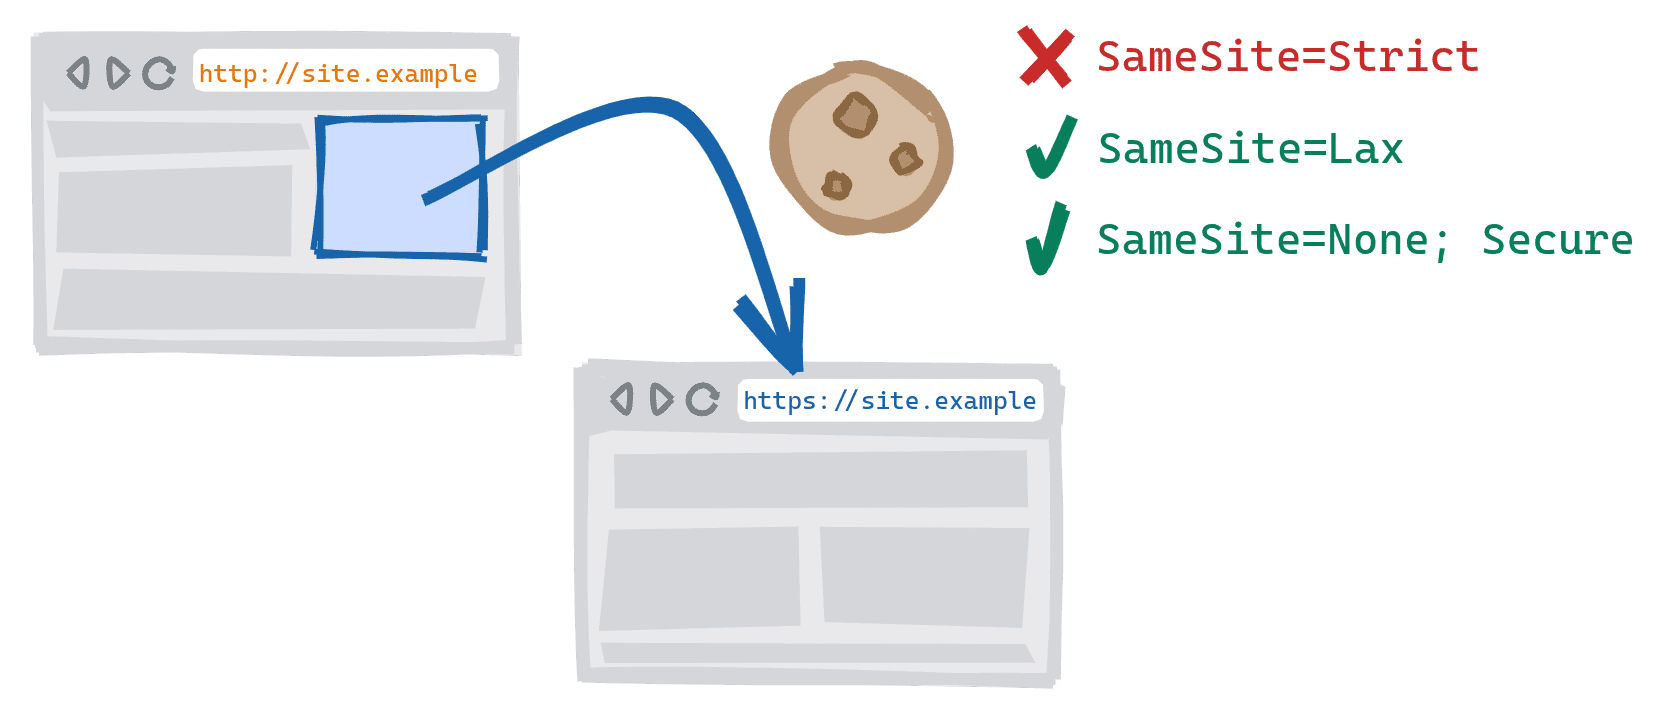 ניווט בין סכימות שמופעל על ידי לחיצה על קישור בגרסת HTTP לא מאובטחת של האתר אל גרסת ה-HTTPS המאובטחת. SameSite=Strict קובצי cookie חסומים, SameSite=Lax ו-SameSite=None; קובצי cookie מאובטחים מותרים.